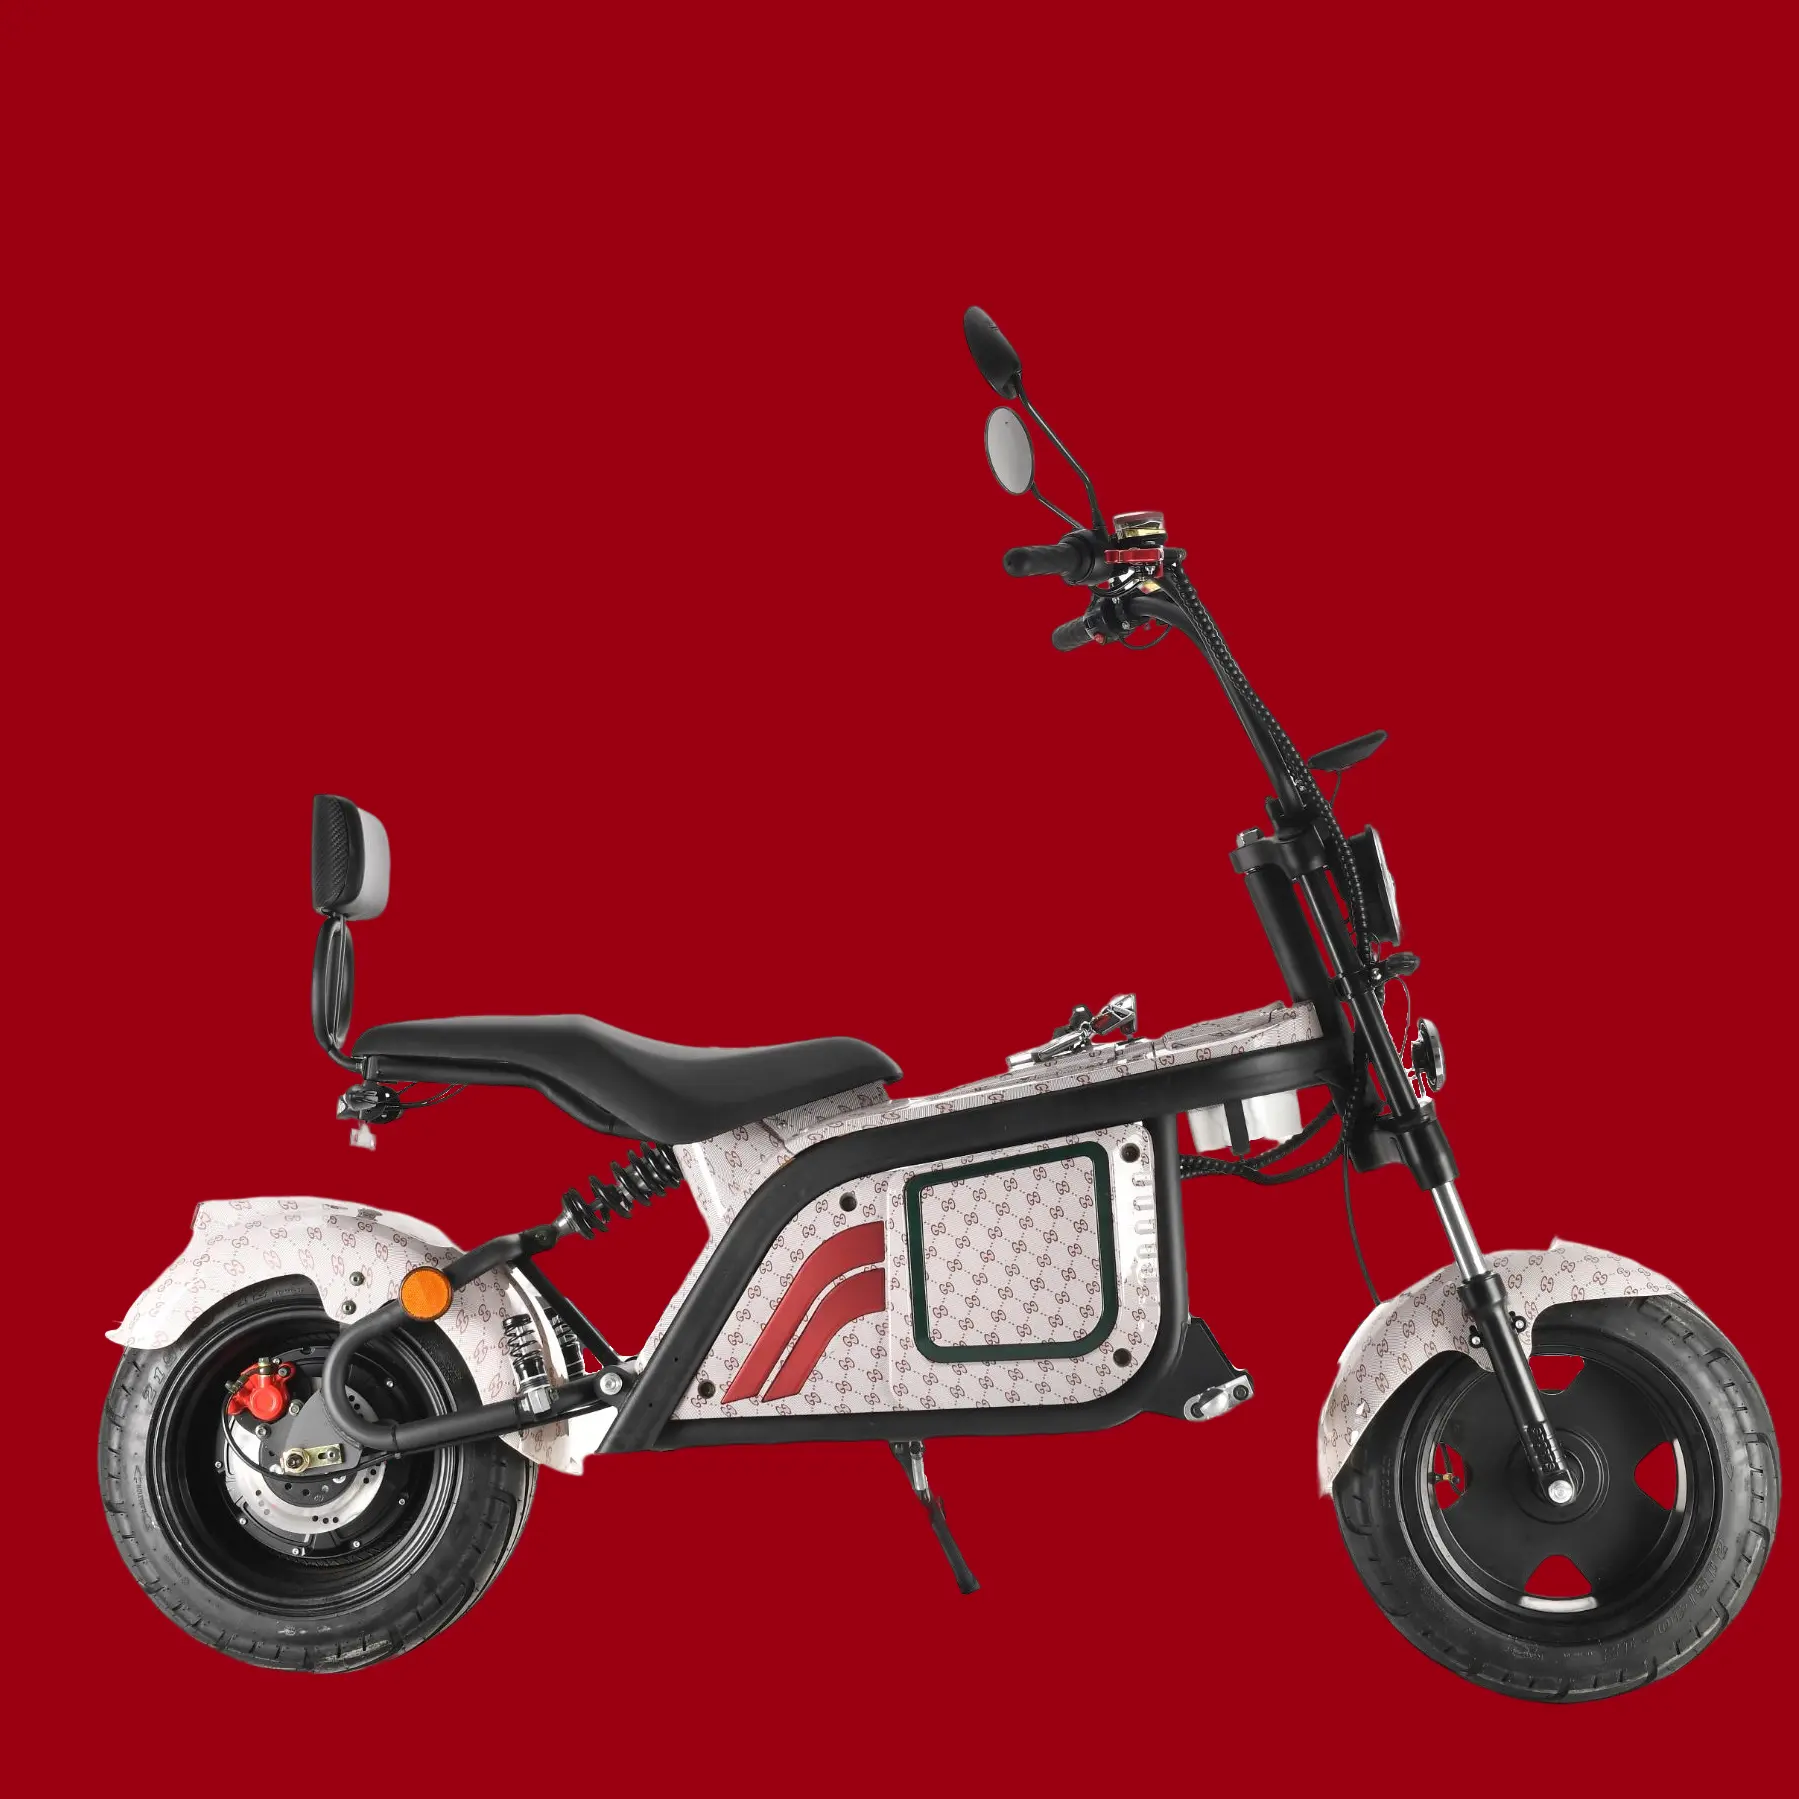 Kargo kral yüksek hızlı 2 tekerlekli yetişkin elektrikli Scooter elektrikli motosiklet çin satılık Takeaway motosikletler sıcak